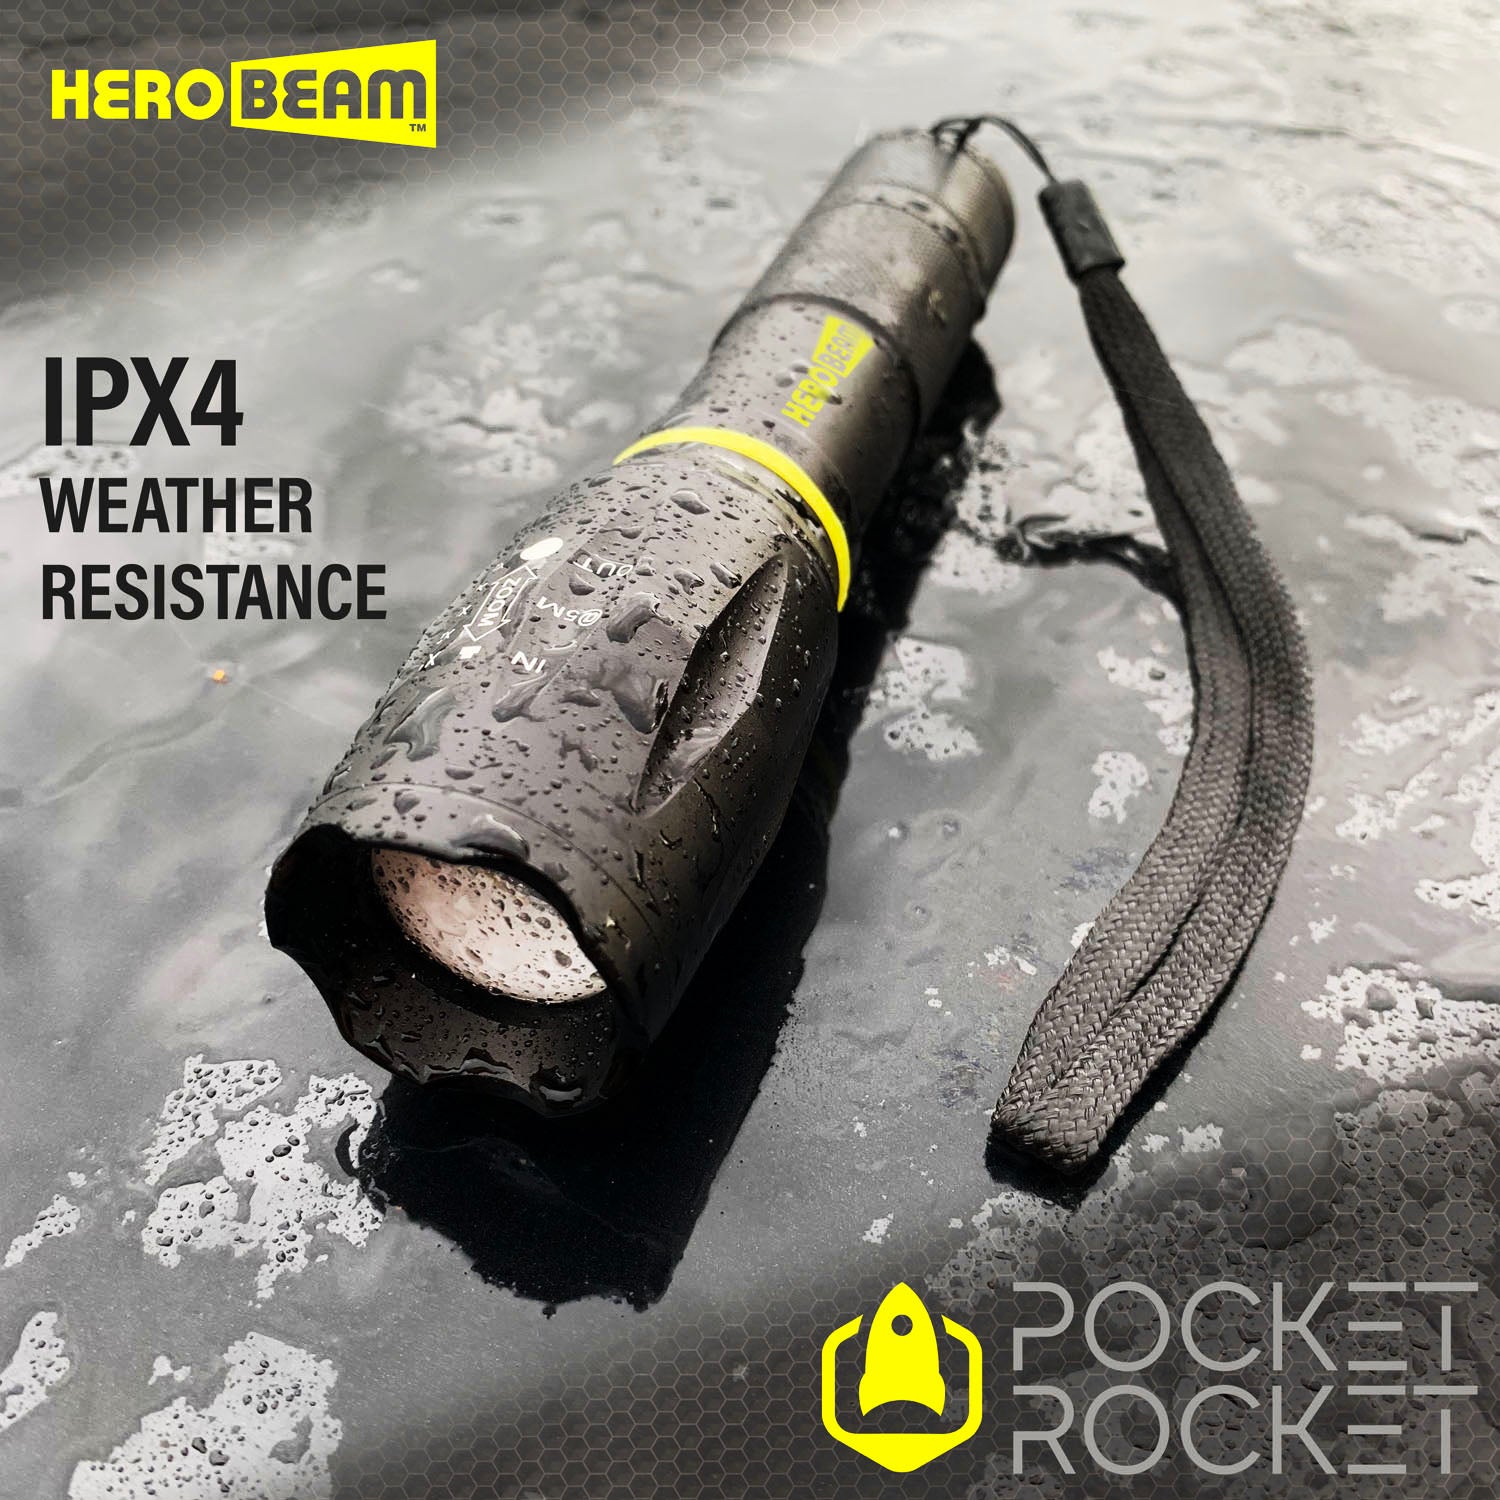 HEROBEAM® Pocket Rocket Tactical Flashlight